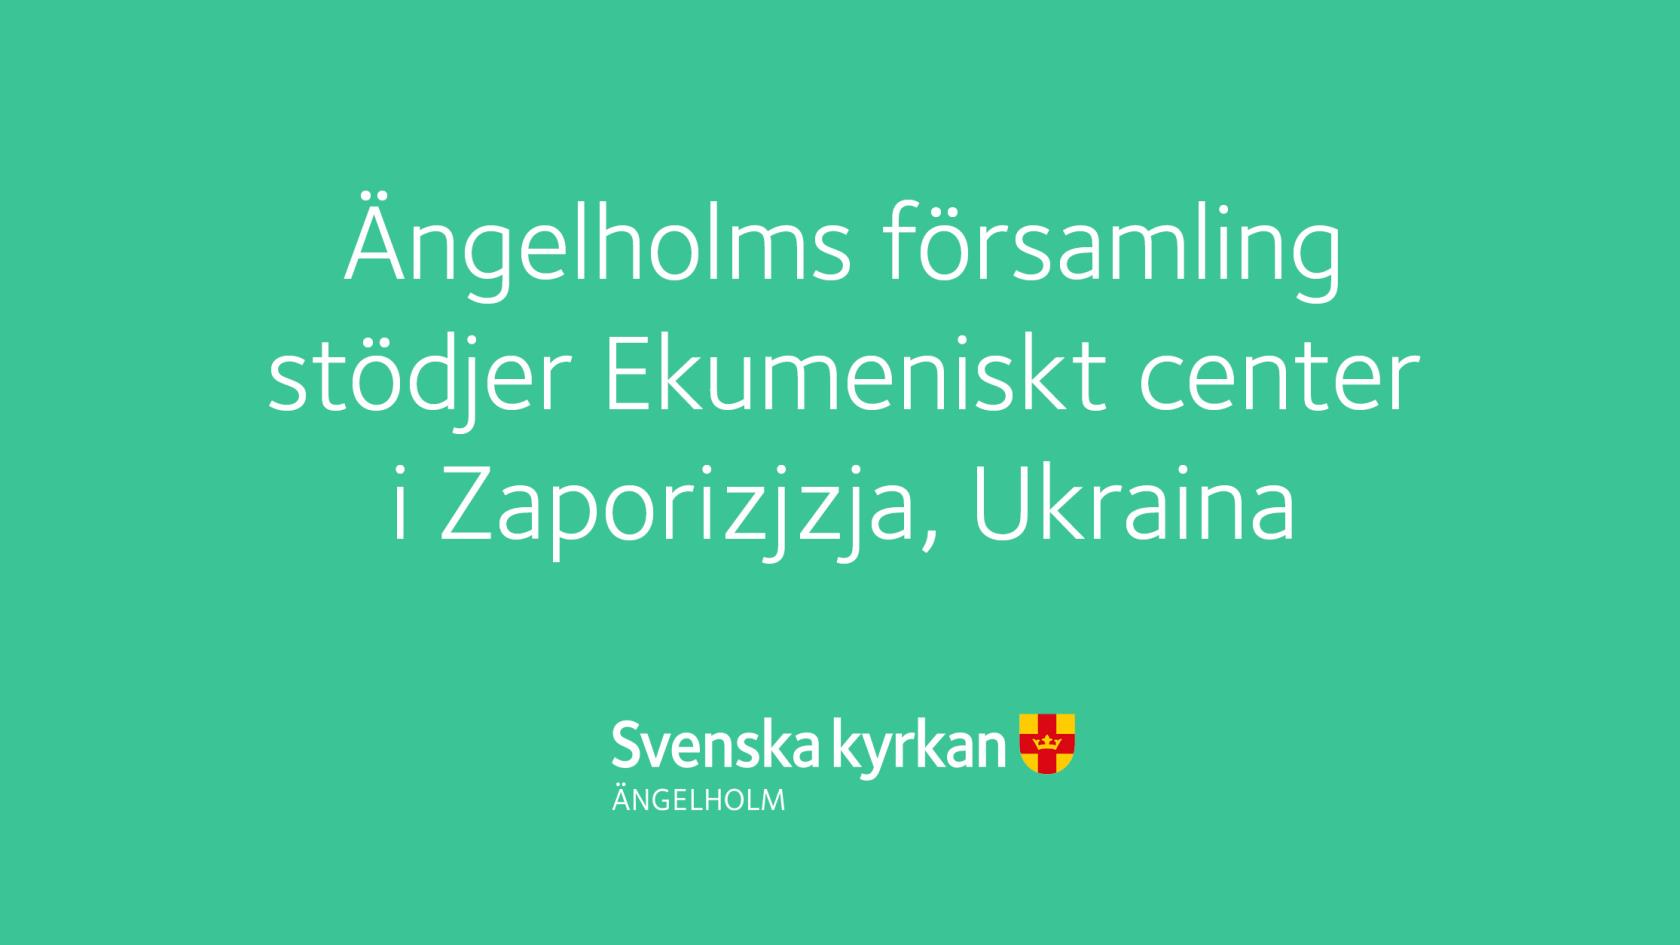 Grön ruta med texten Ängelholms församling  stödjer Ekumeniskt center  i Zaporizjzja, Ukraina.